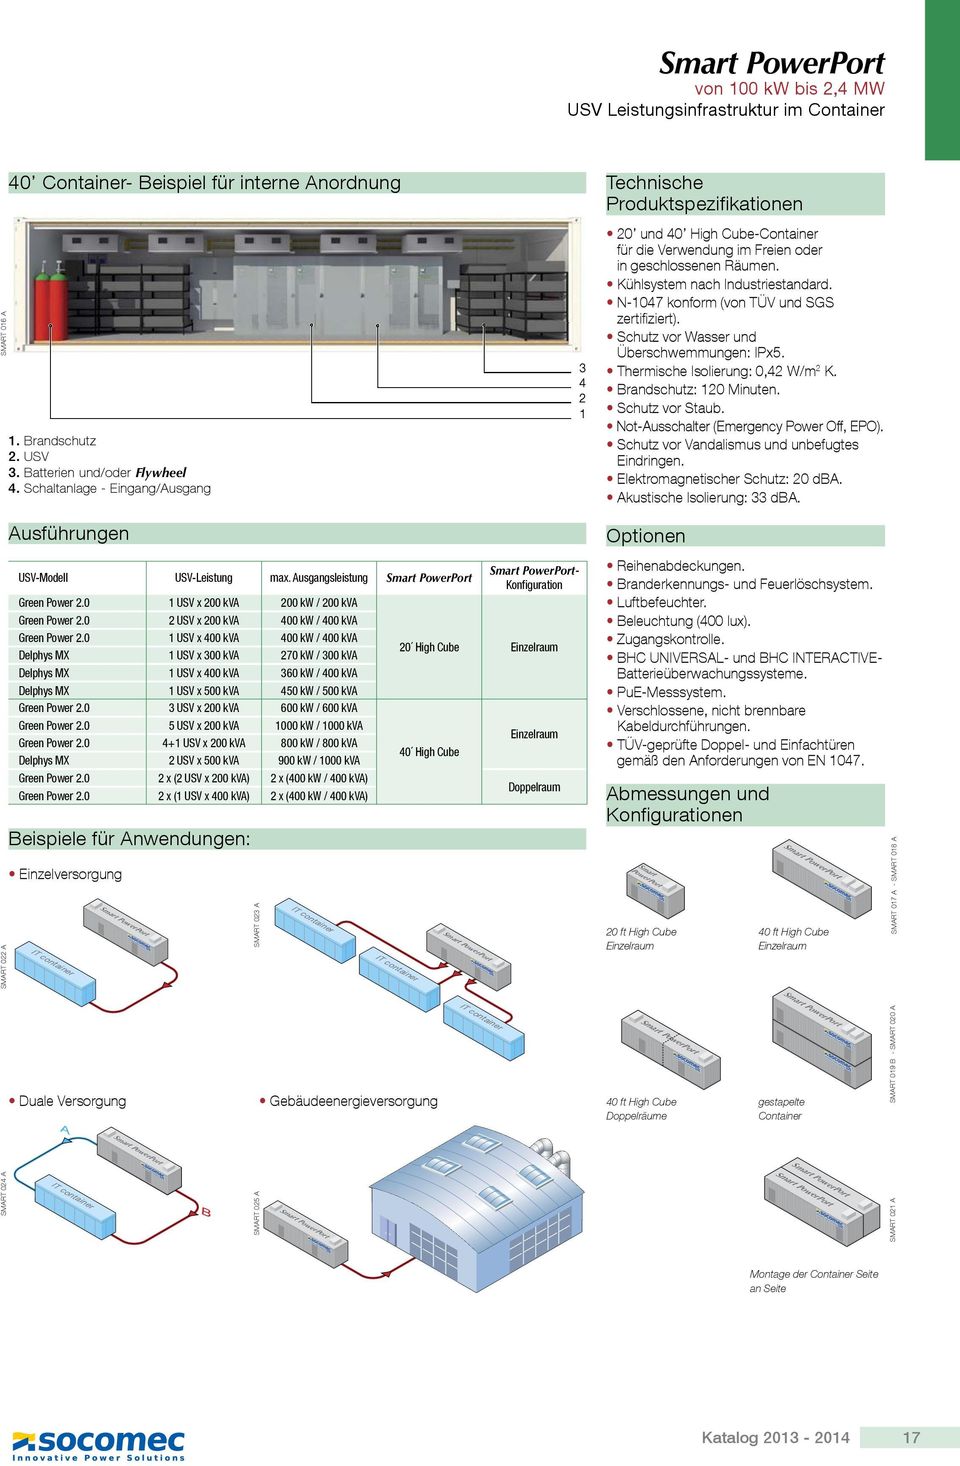 Kühlsystem nach Industriestandard. N-1047 konform (von TÜV und SGS zertifiziert). Schutz vor Wasser und Überschwemmungen: IPx5. Thermische Isolierung: 0,42 W/m 2 K. Brandschutz: 120 Minuten.